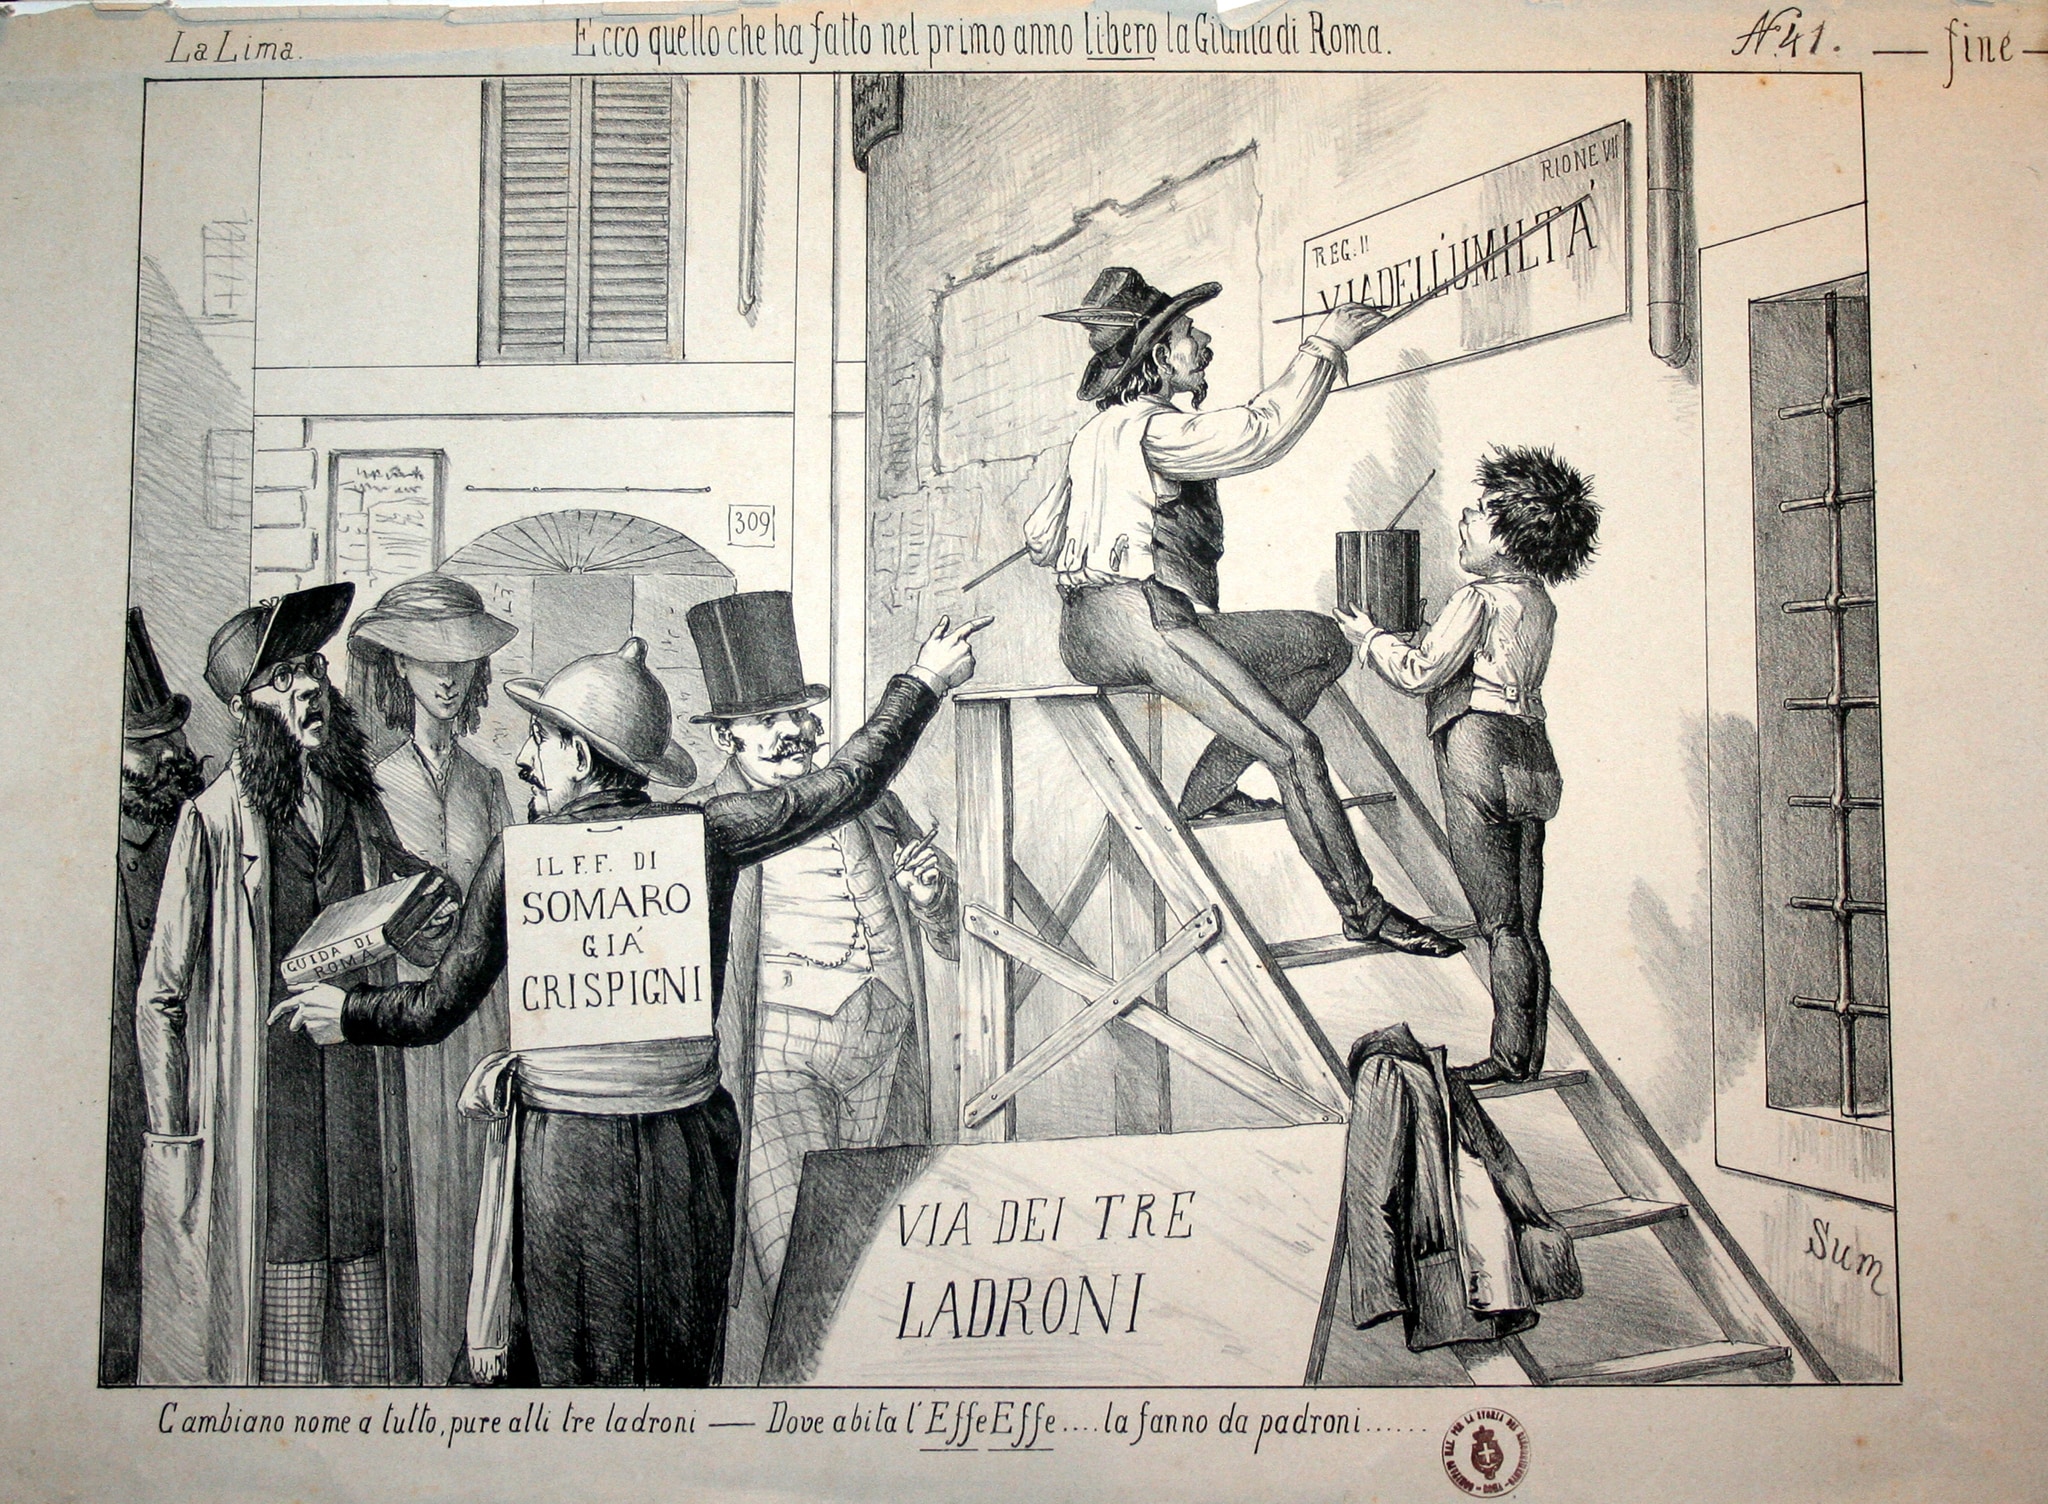 Disegno satirico sulla nuova giunta comunale di Roma dopo l’unità d’Italia. 1871